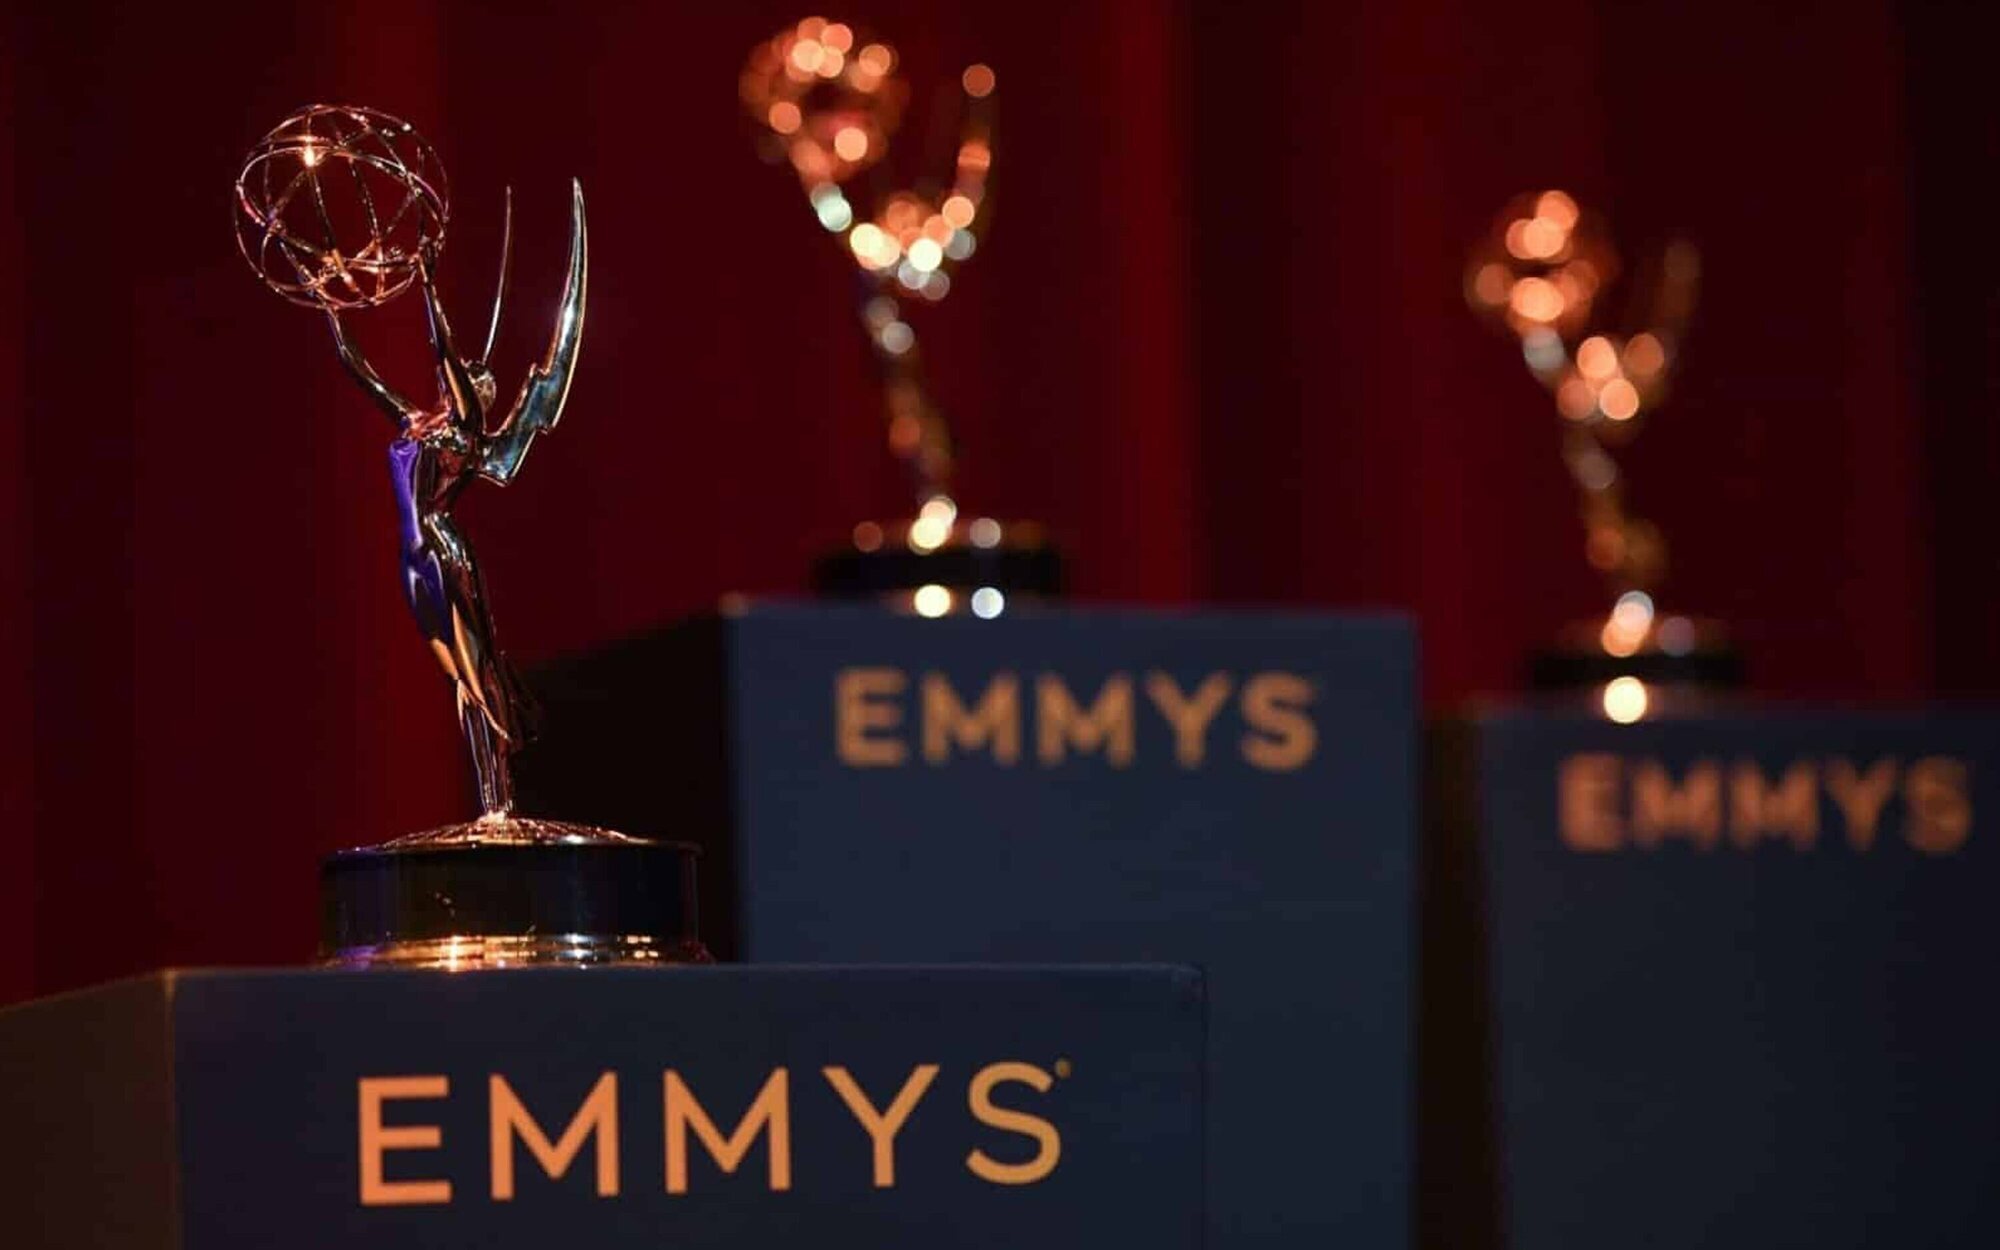 Lista completa de ganadores de los premios Emmy 2022